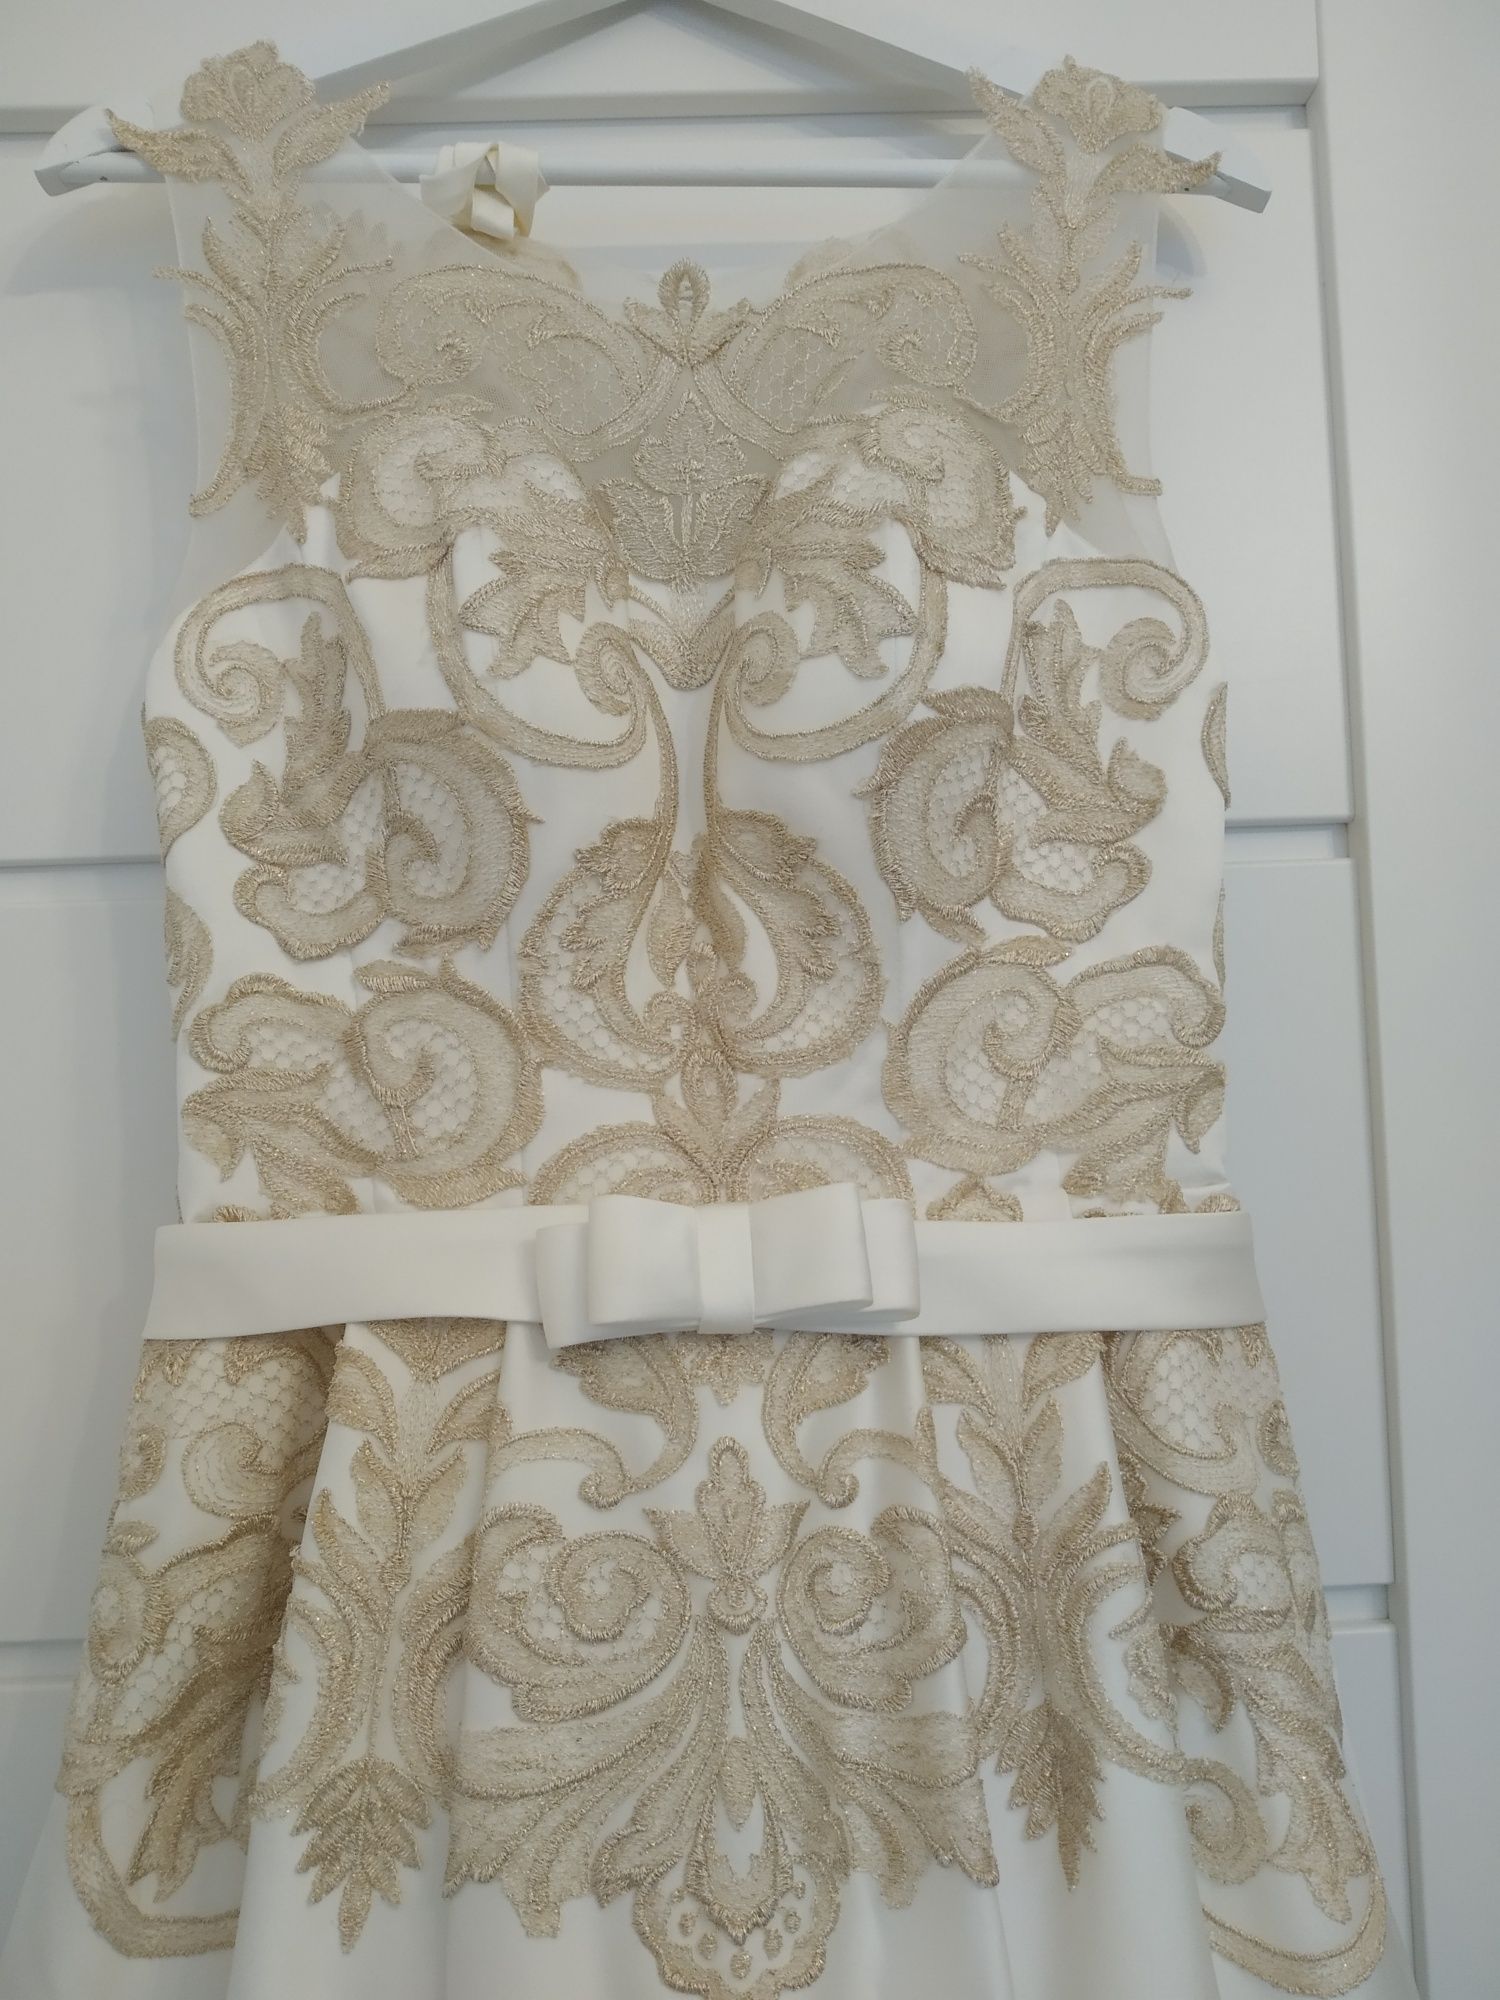 Suknia ślubna w kolorze ecru królewska rozmiar XS/S/M gruby atlas